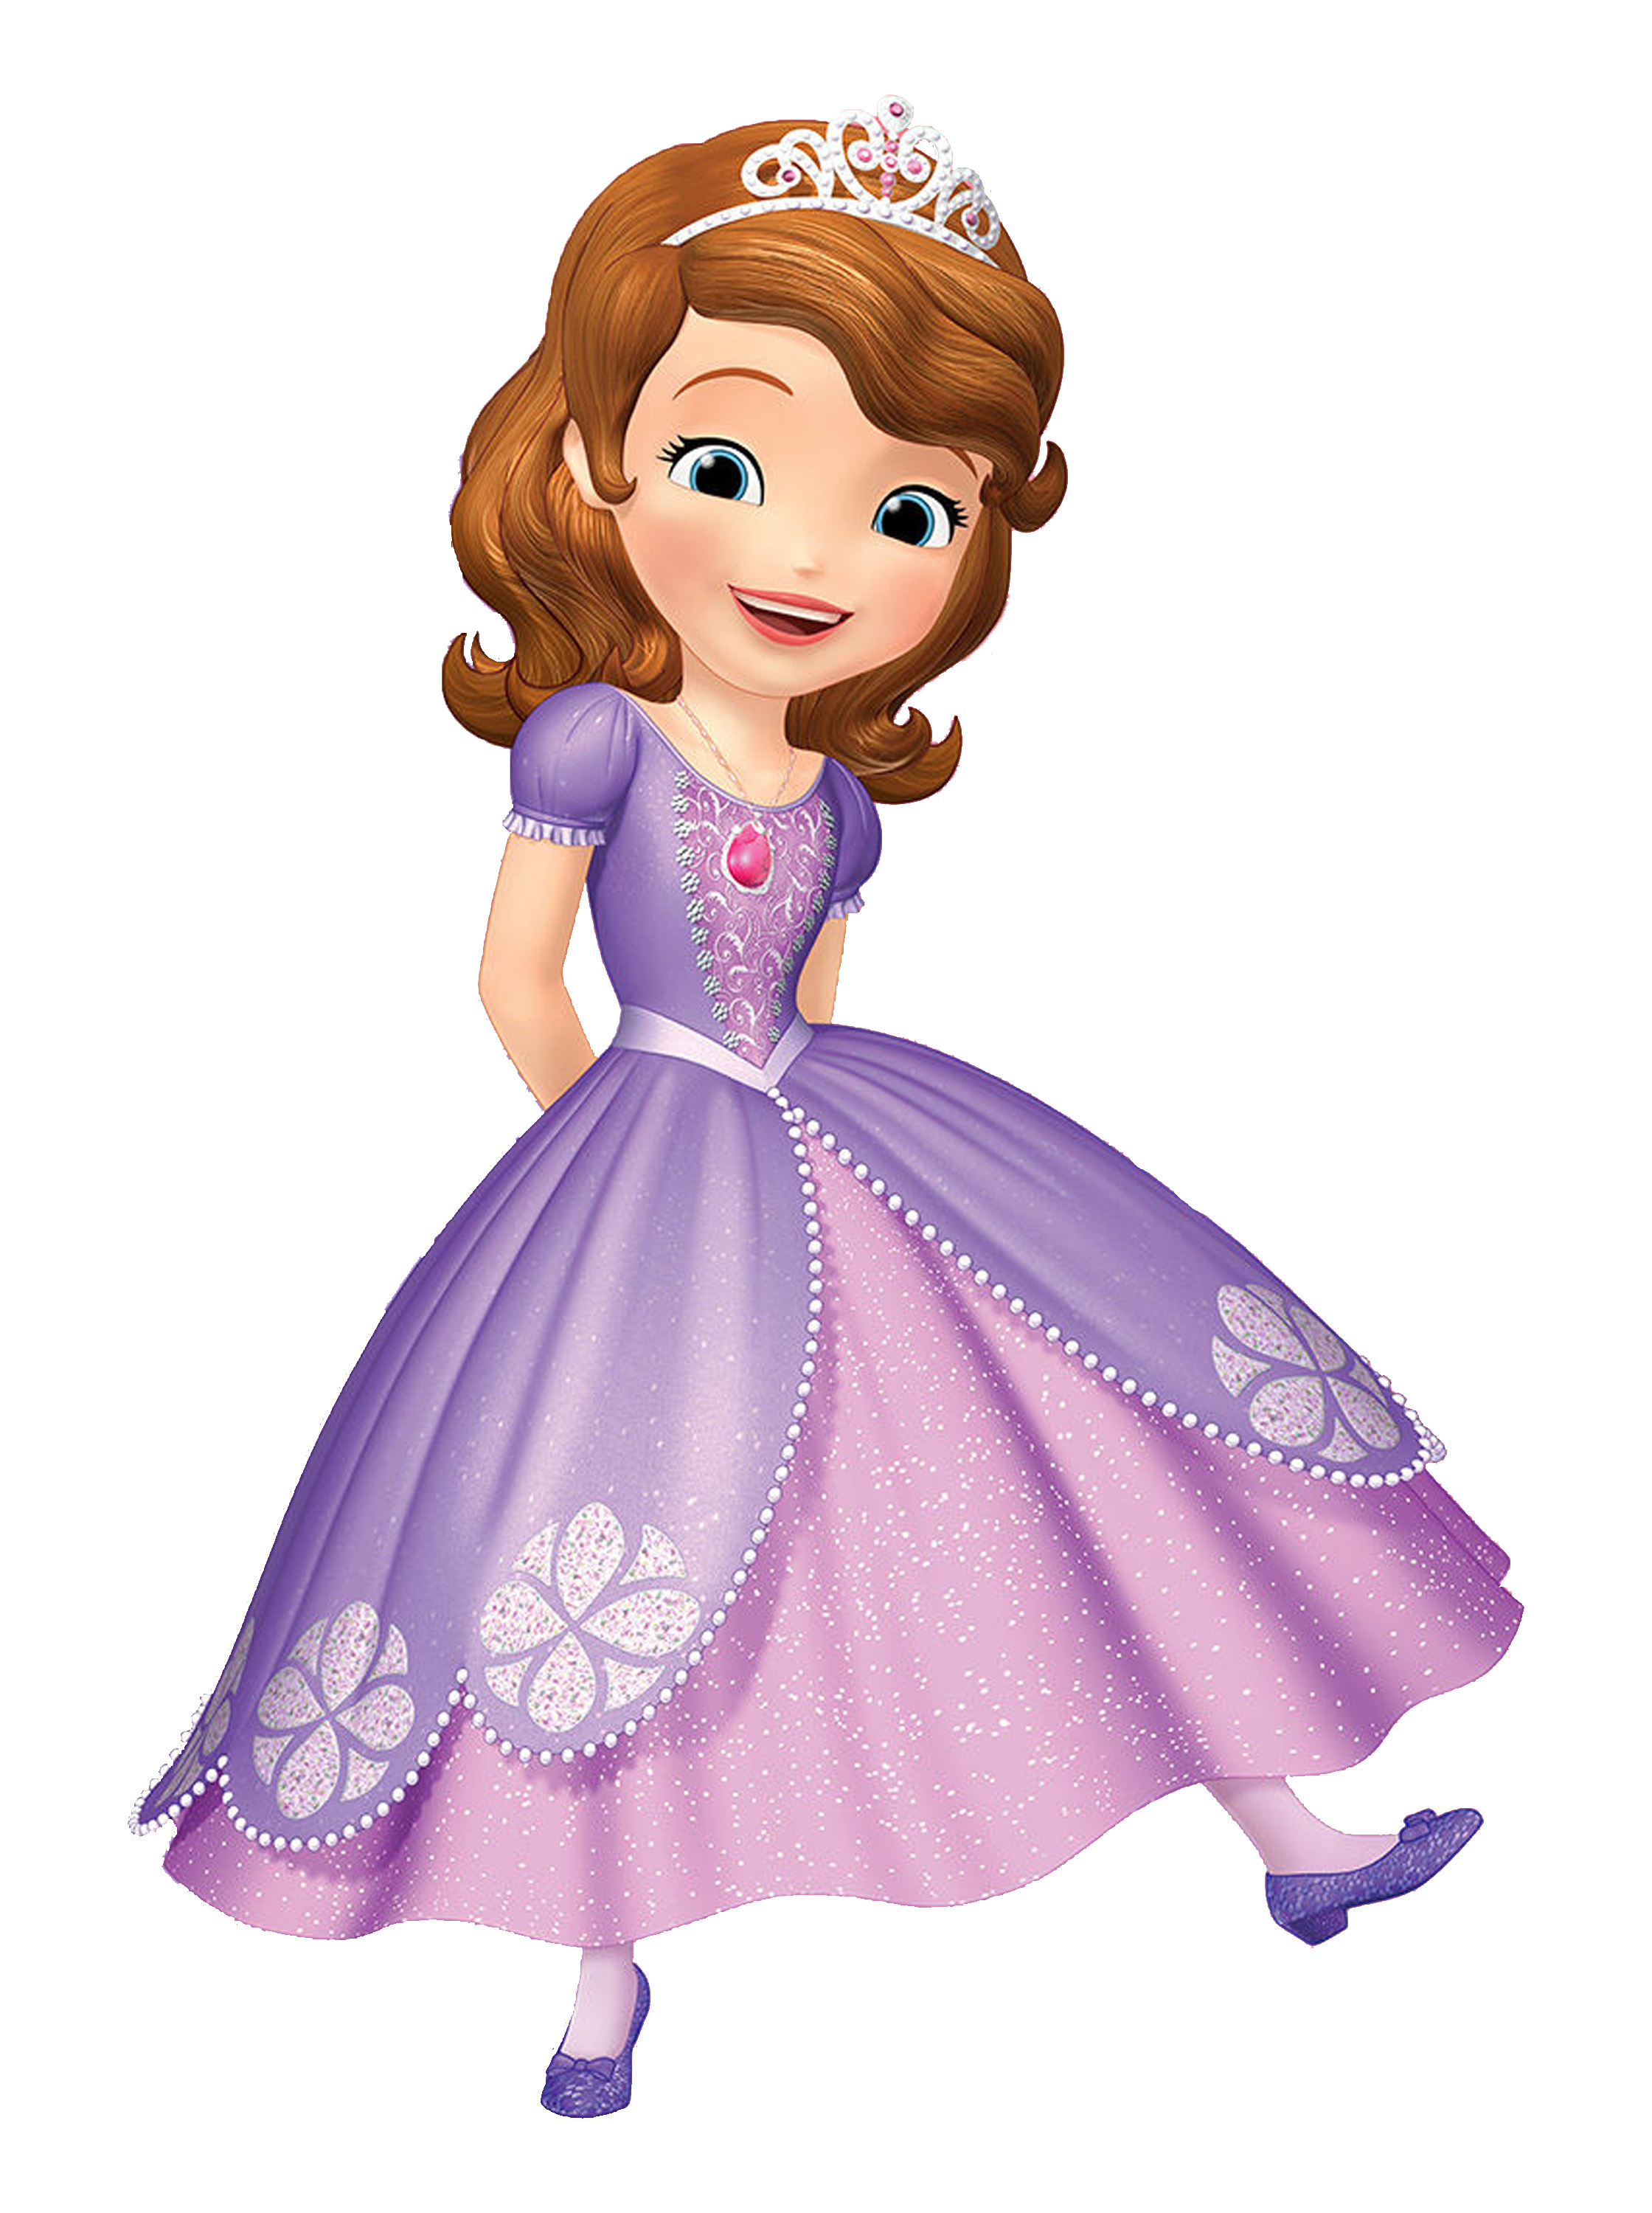 Disney Princess Sofia Merryweather Clover Whatnaught Ruby Mia toy figure 